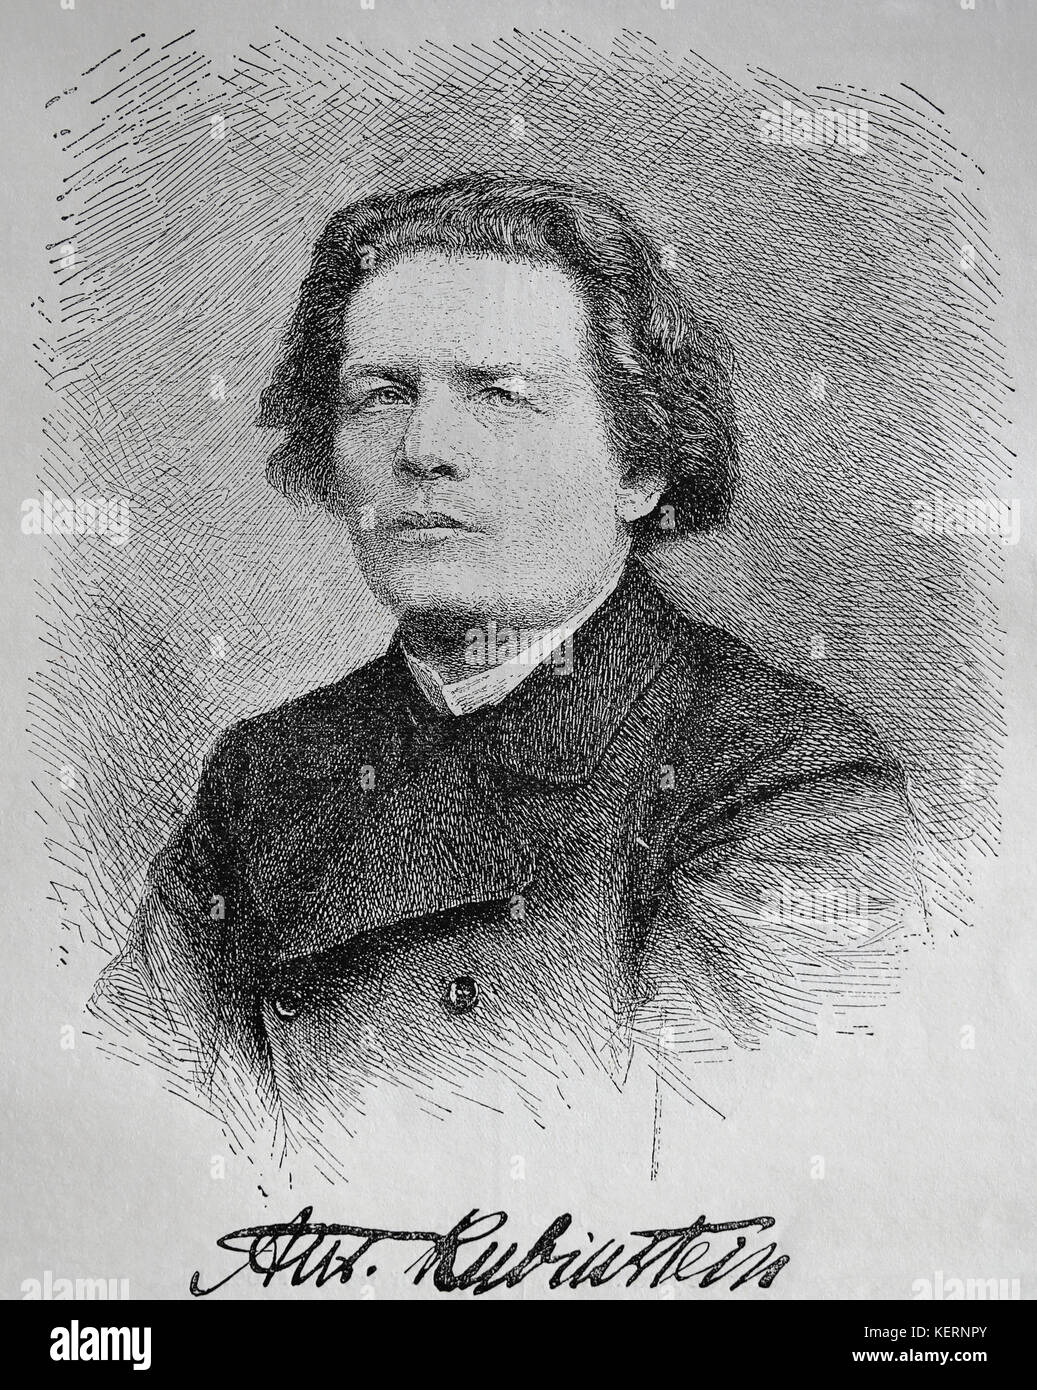 Anton Rubinstein (1829-1894). pianiste, compositeur et chef d'orchestre. gravure, 1883. nuestro siglo, 1883, Barcelone, Espagne. Banque D'Images